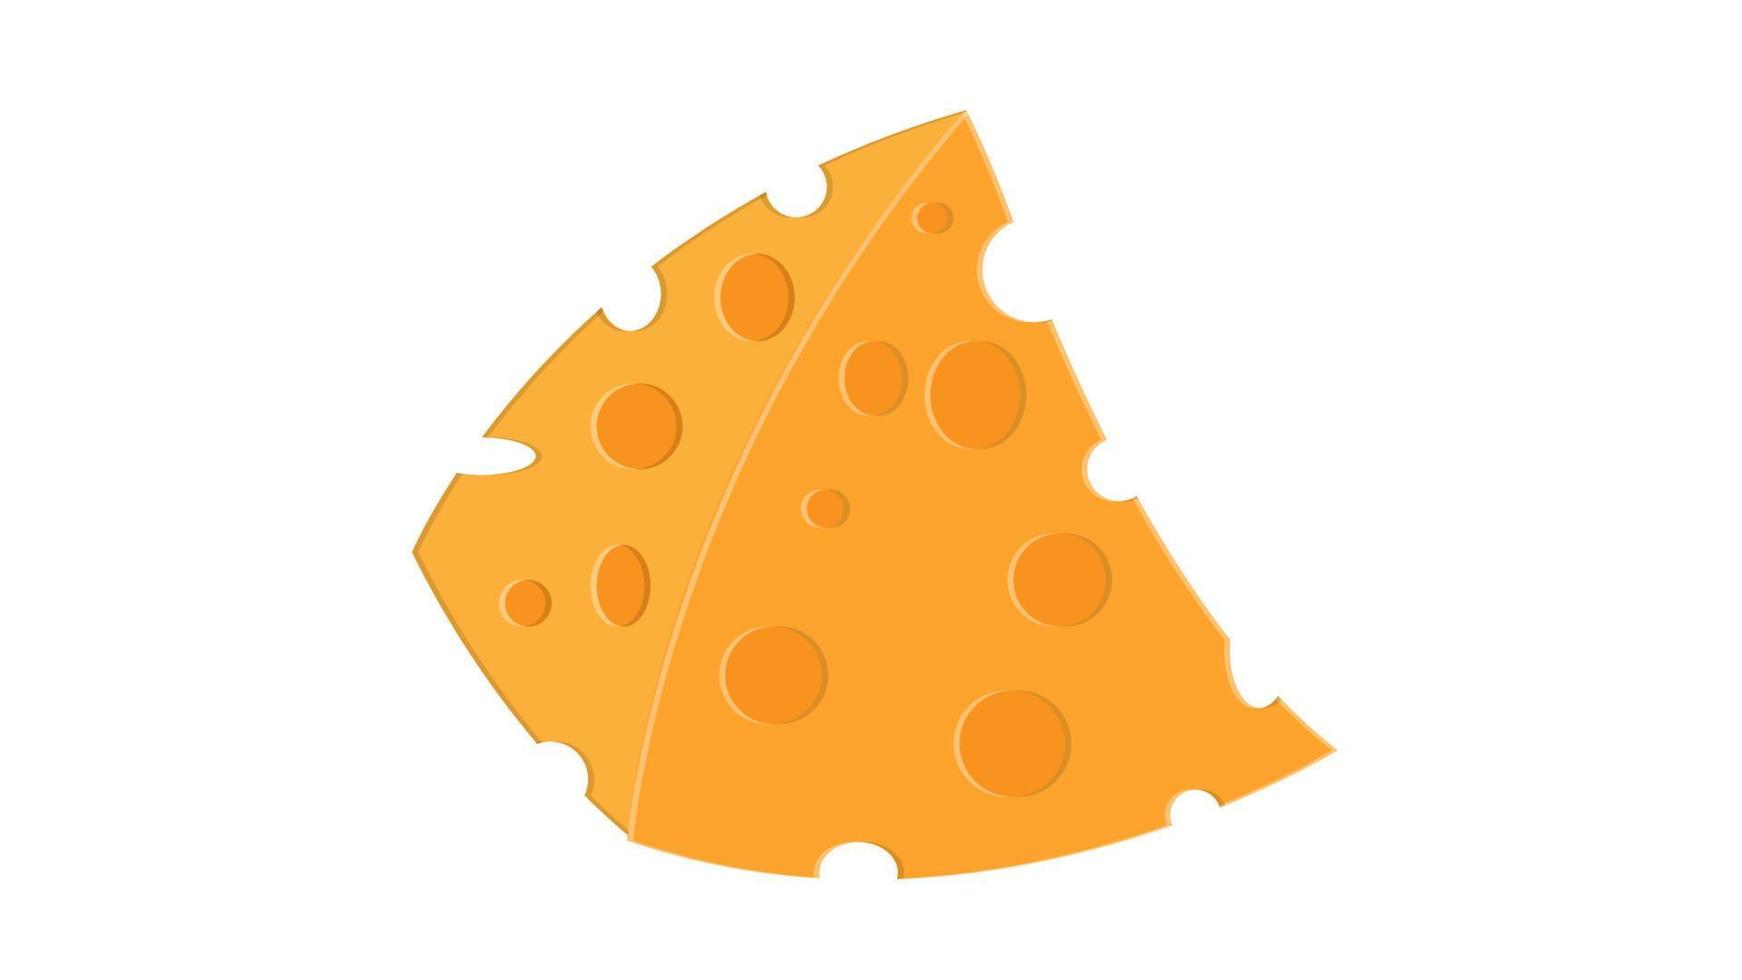 Käse auf weißem Hintergrund, Vektorillustration. eine appetitliche dreieckige Käsescheibe mit Löchern. französischer Käse mit zartem Aroma. Frischkäse vektor